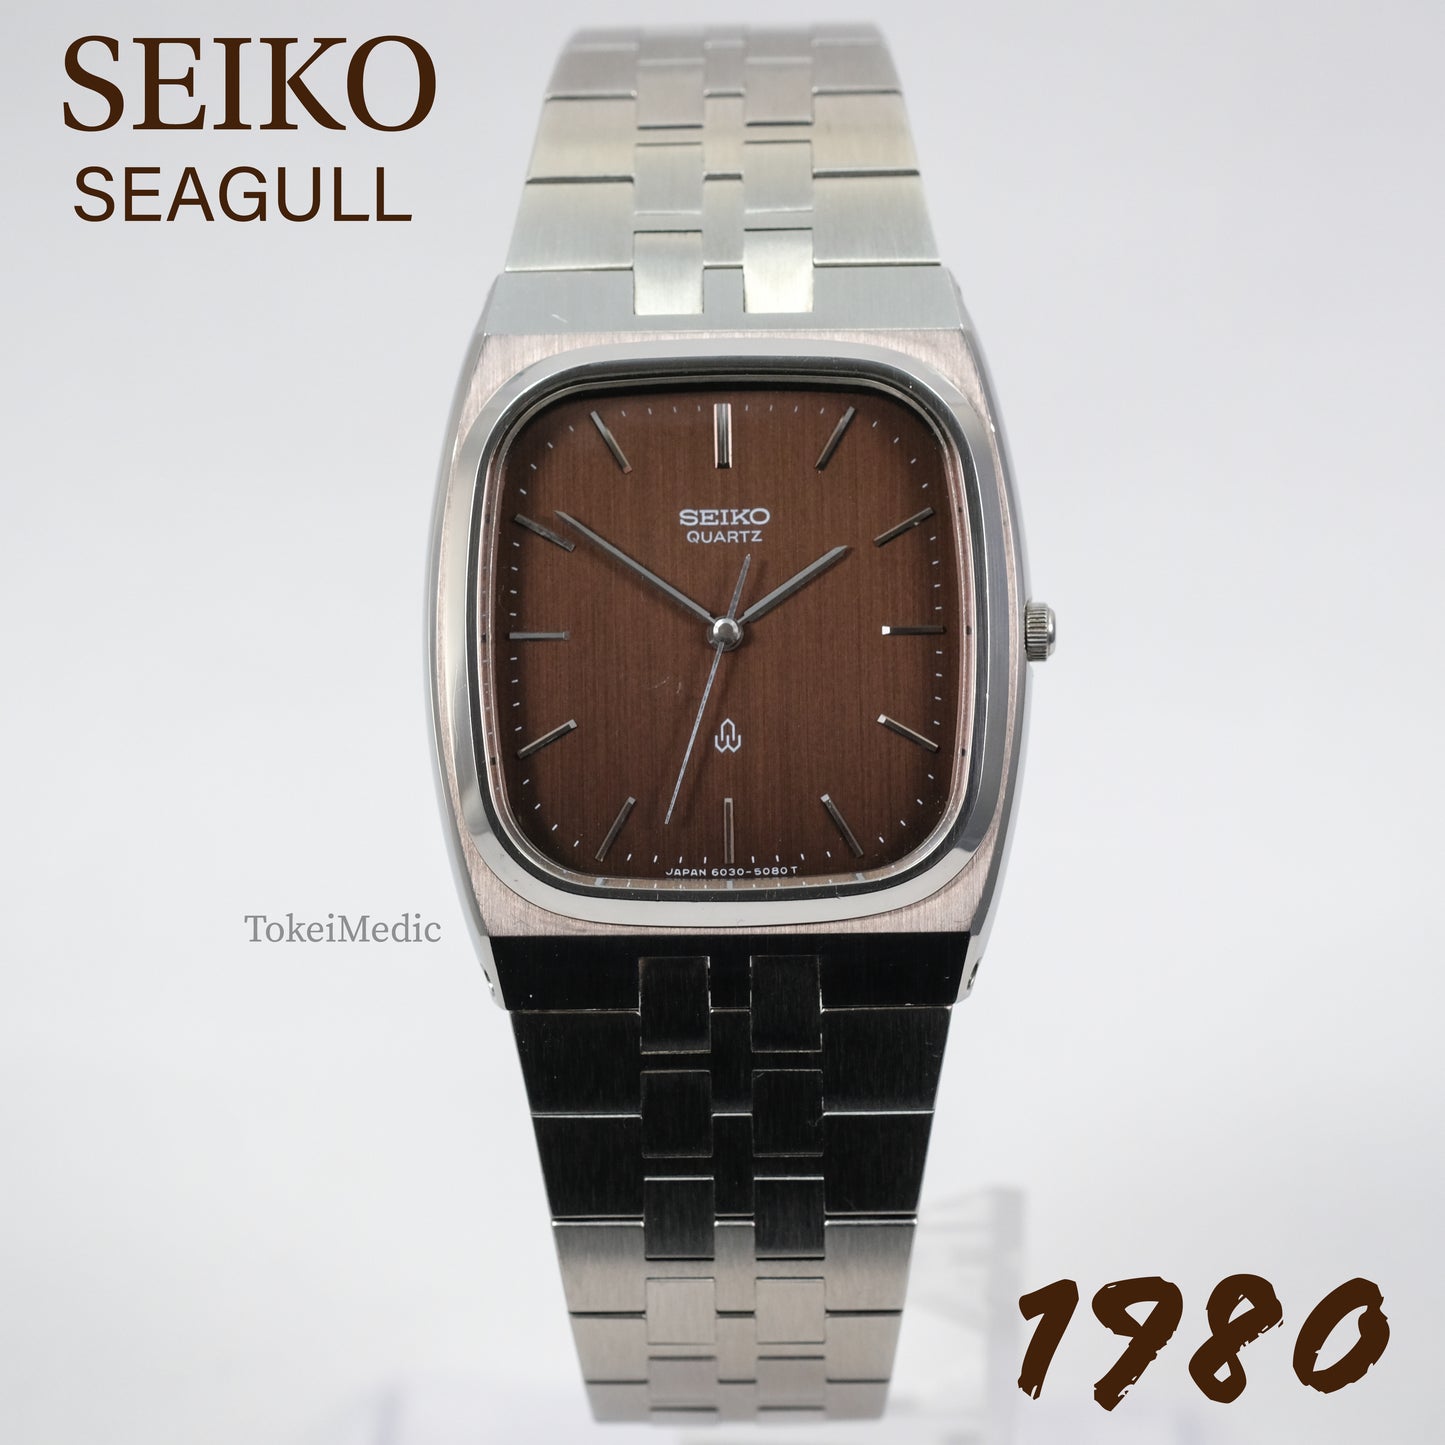 1980 Seiko Seagull 6030-5090